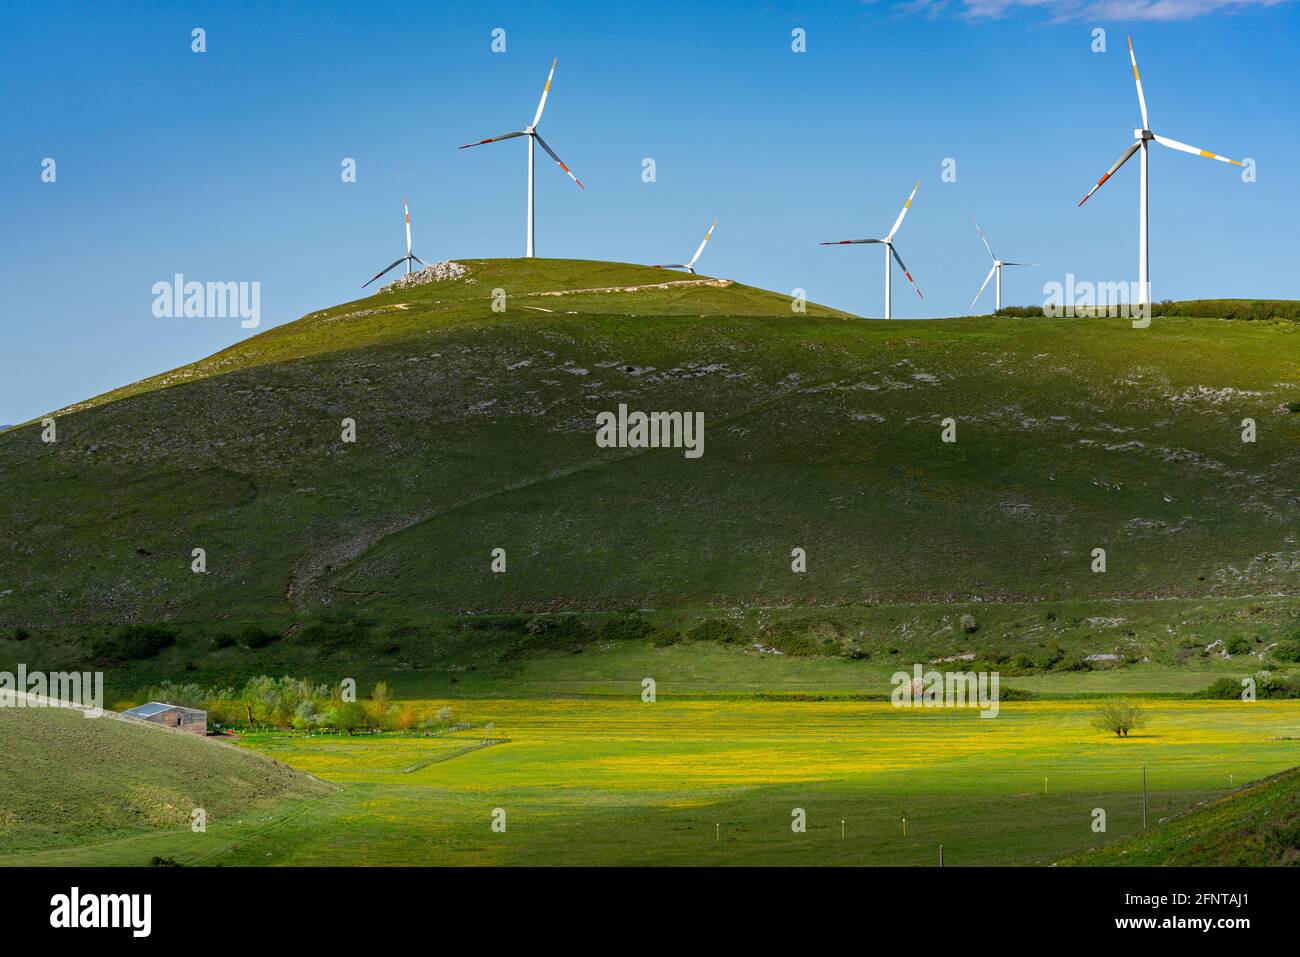 Panorama de campos verdes y amarillos con colinas y aerogeneradores en la parte superior. Juego de luz y sombra. Abruzzo, Italia, Europa Foto de stock